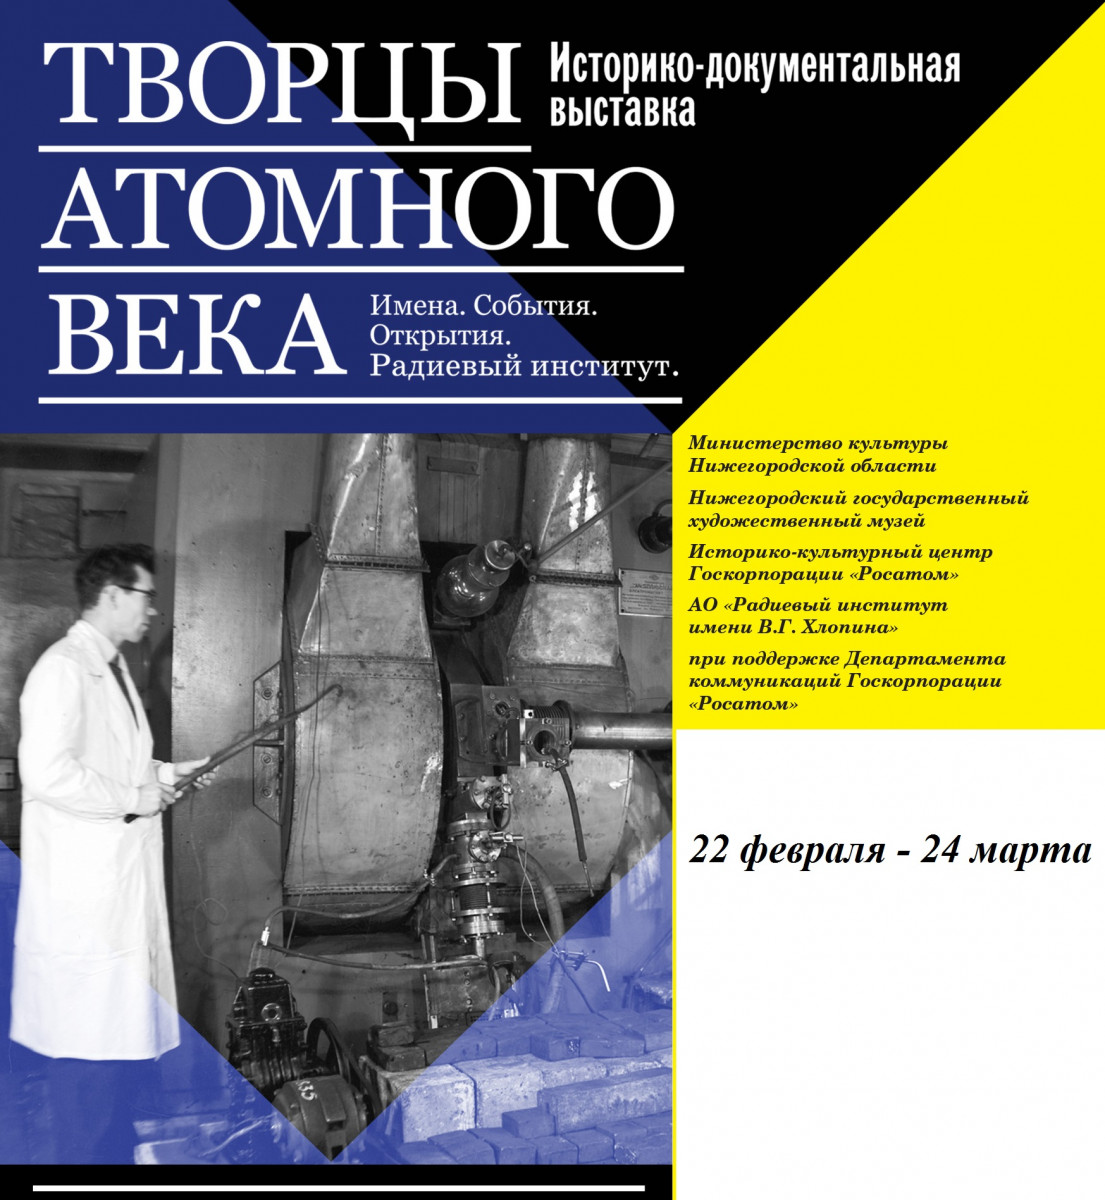 Выставка «Творцы атомного века» пройдет в Нижегородском художественном музее